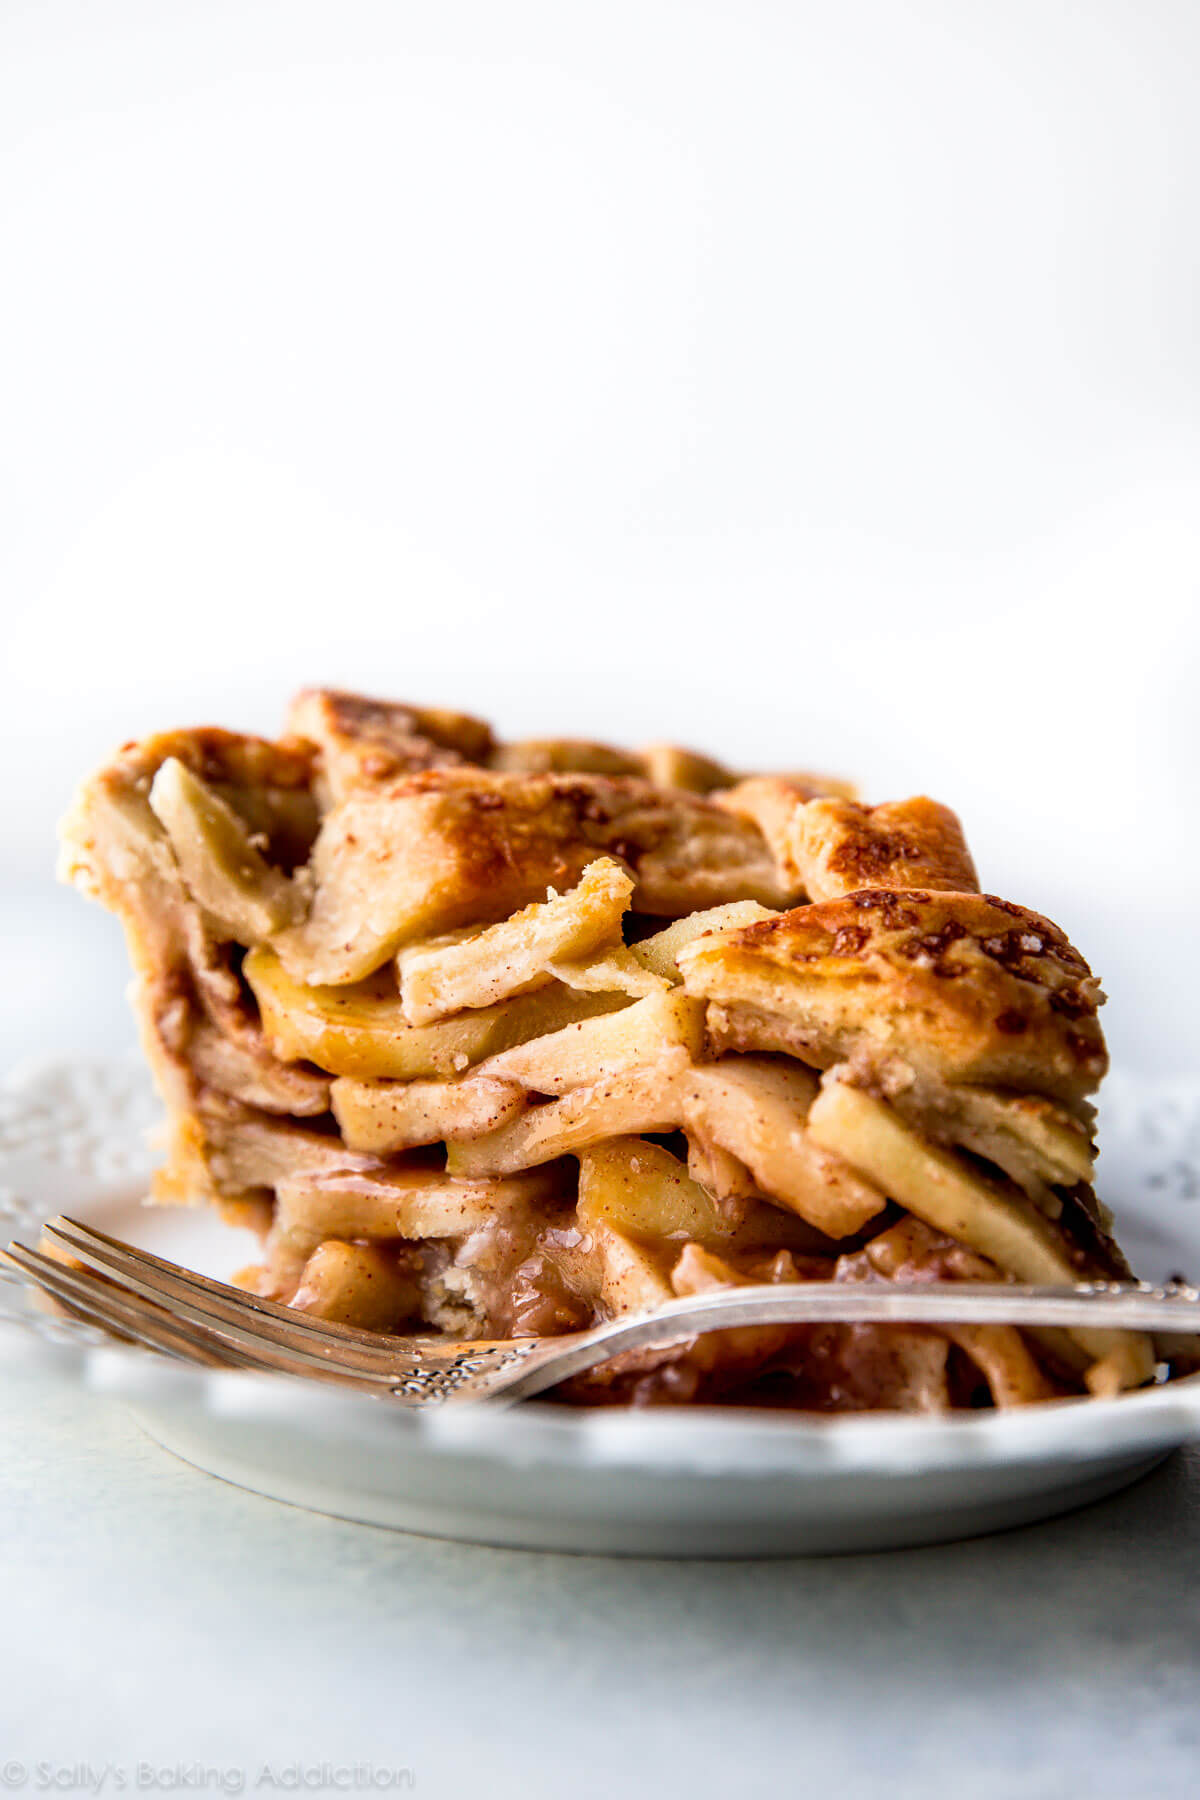 La meilleure recette de tarte aux pommes en plat profond! sallysbakingaddiction.com